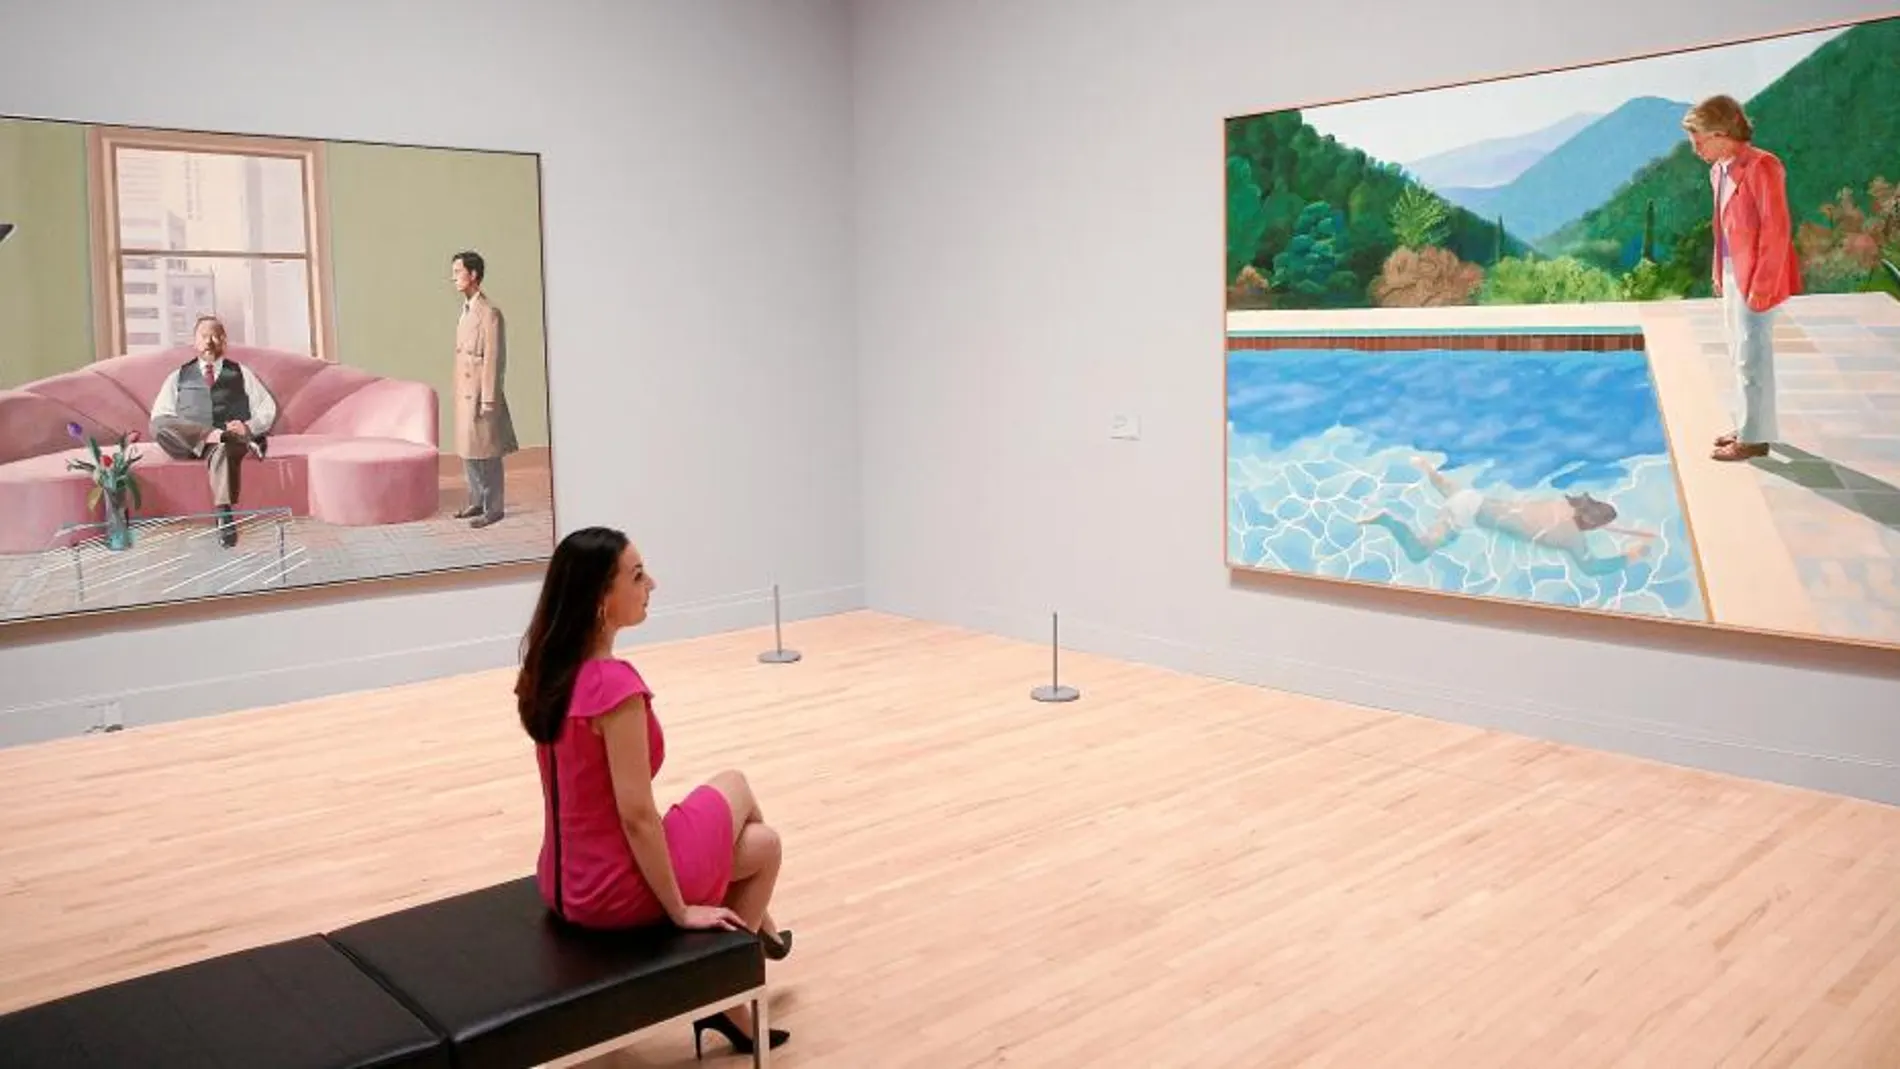 La Tate Britain reúne obras emblemáticas de la trayectoria de Hockney como «Pool whit Two Figures», de 1972